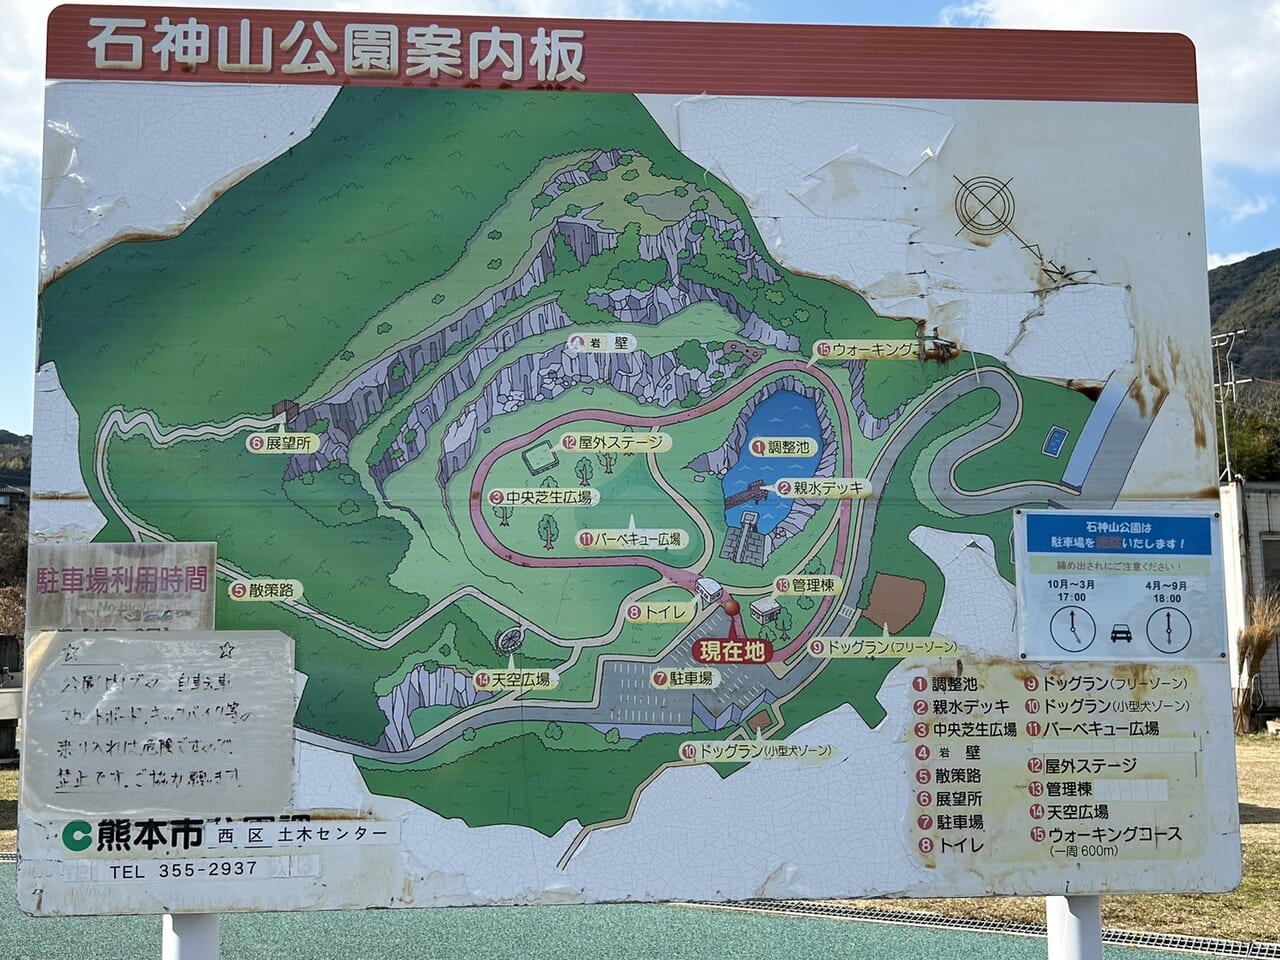 石神山公園